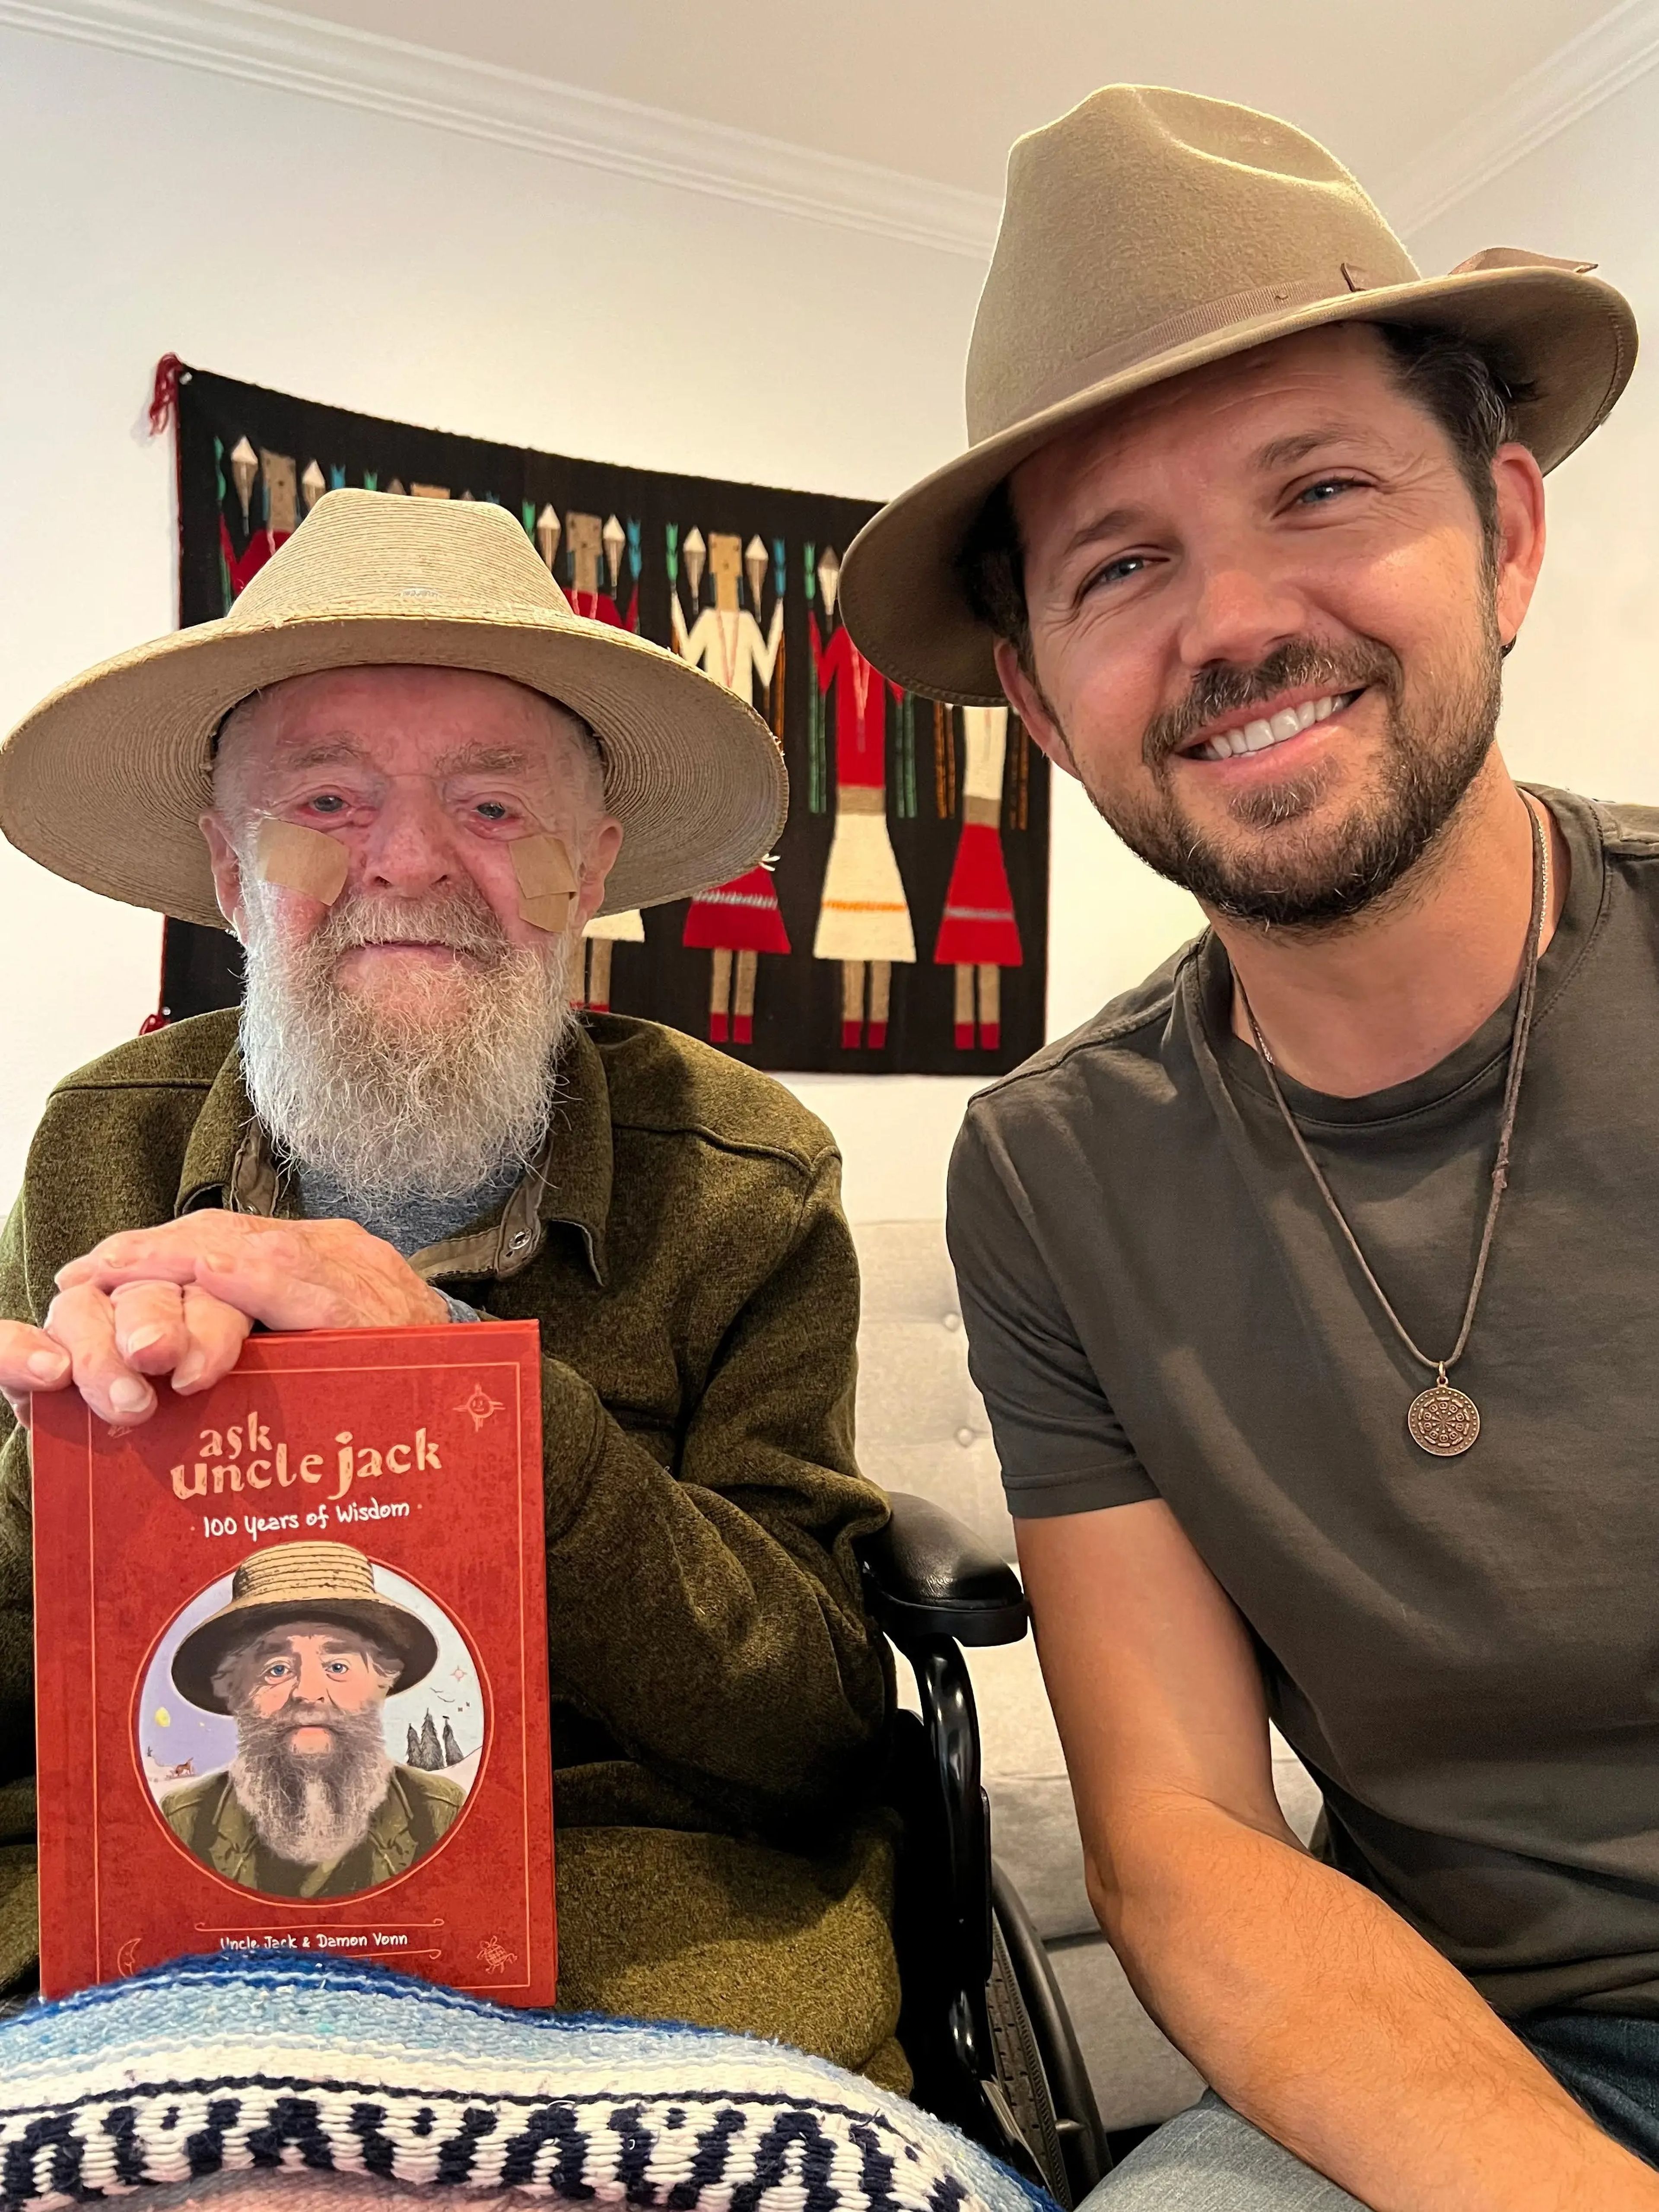 El tío Jack y Damon han escrito un libro sobre la sabiduría de Jack de los últimos 100 años.